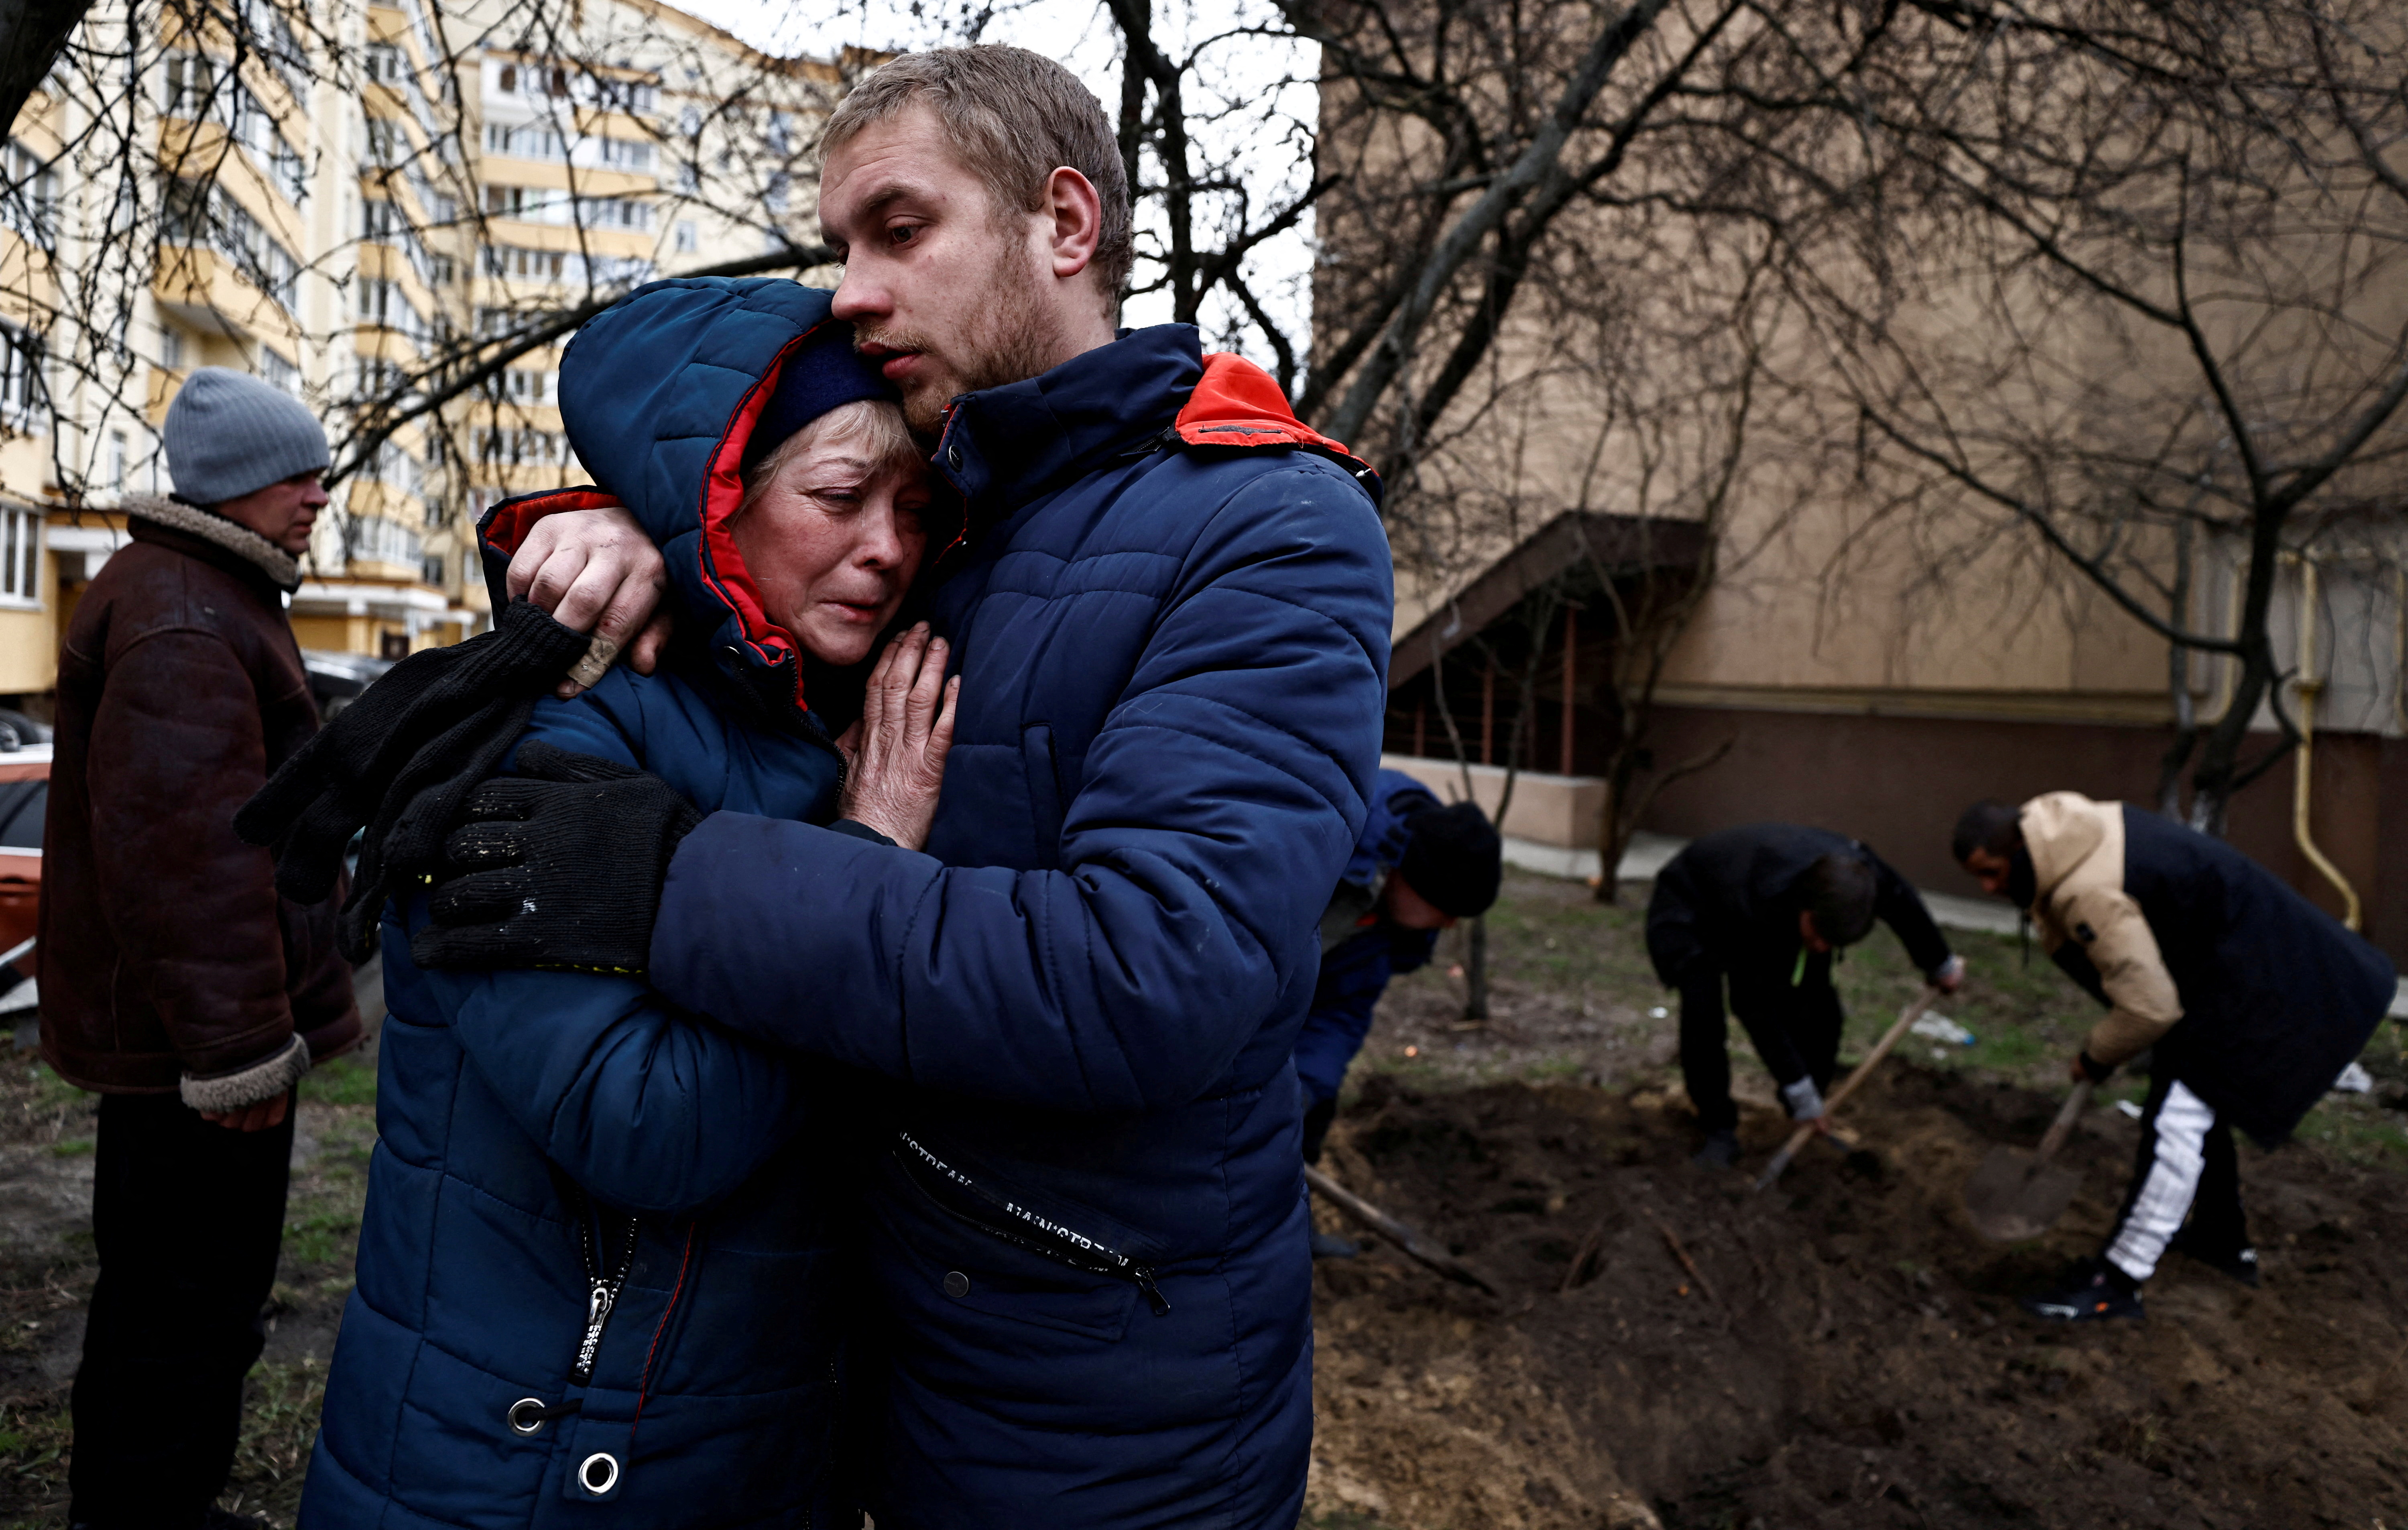 Serhii Lahovskyi, de 26 años, abraza a Ludmyla Verginska, de 51, mientras lloran a su amigo común Ihor Lytvynenko, quien, según los residentes, fue asesinado por soldados rusos en Bucha, Ucrania 5 de abril de 2022. REUTERS/Zohra Bensemra